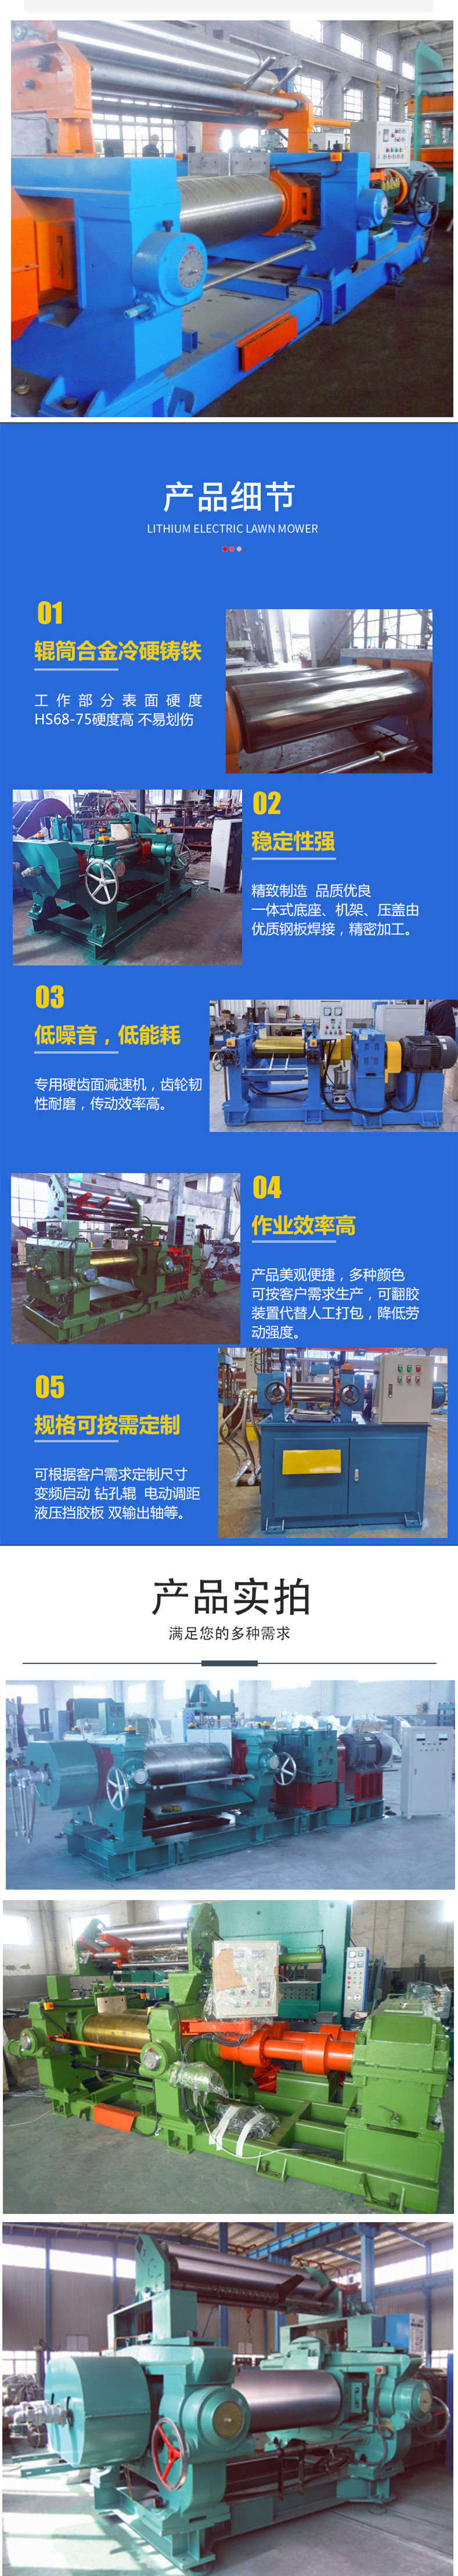 Jiaxin Run XK-450 Open Rubber Refining Machine -18 inch Bearing Thin Oil Lubrication Refining Machine - Dual Roller High Efficiency